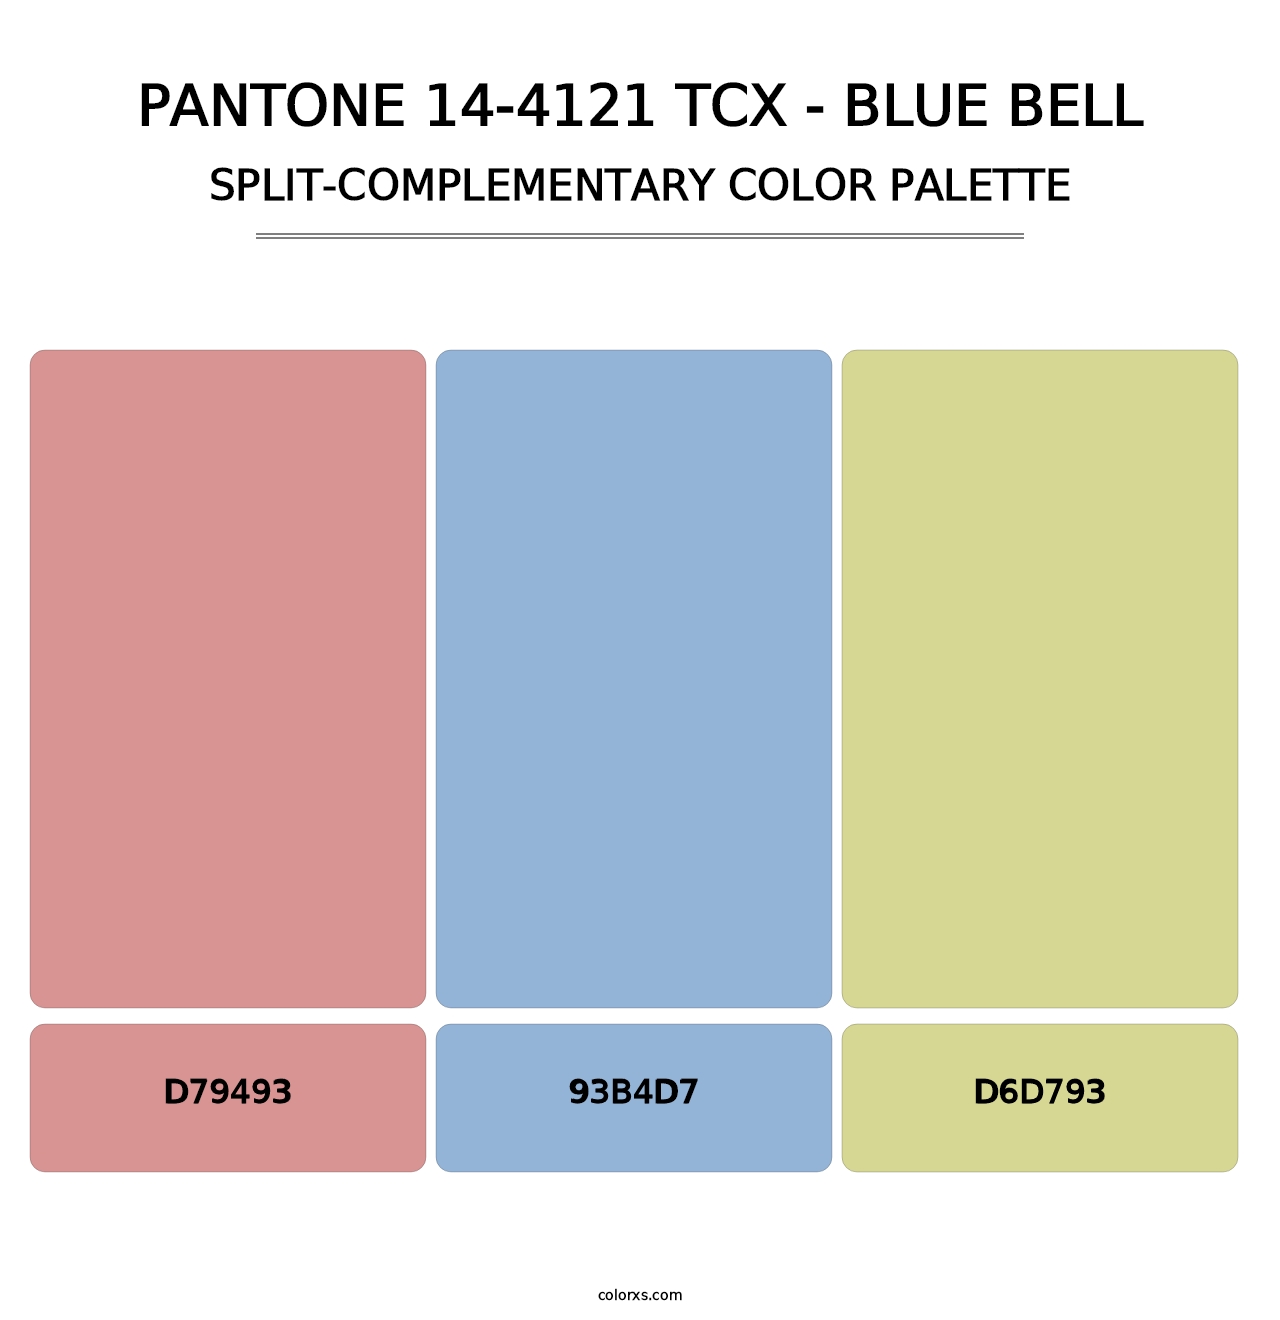 PANTONE 14-4121 TCX - Blue Bell - Split-Complementary Color Palette